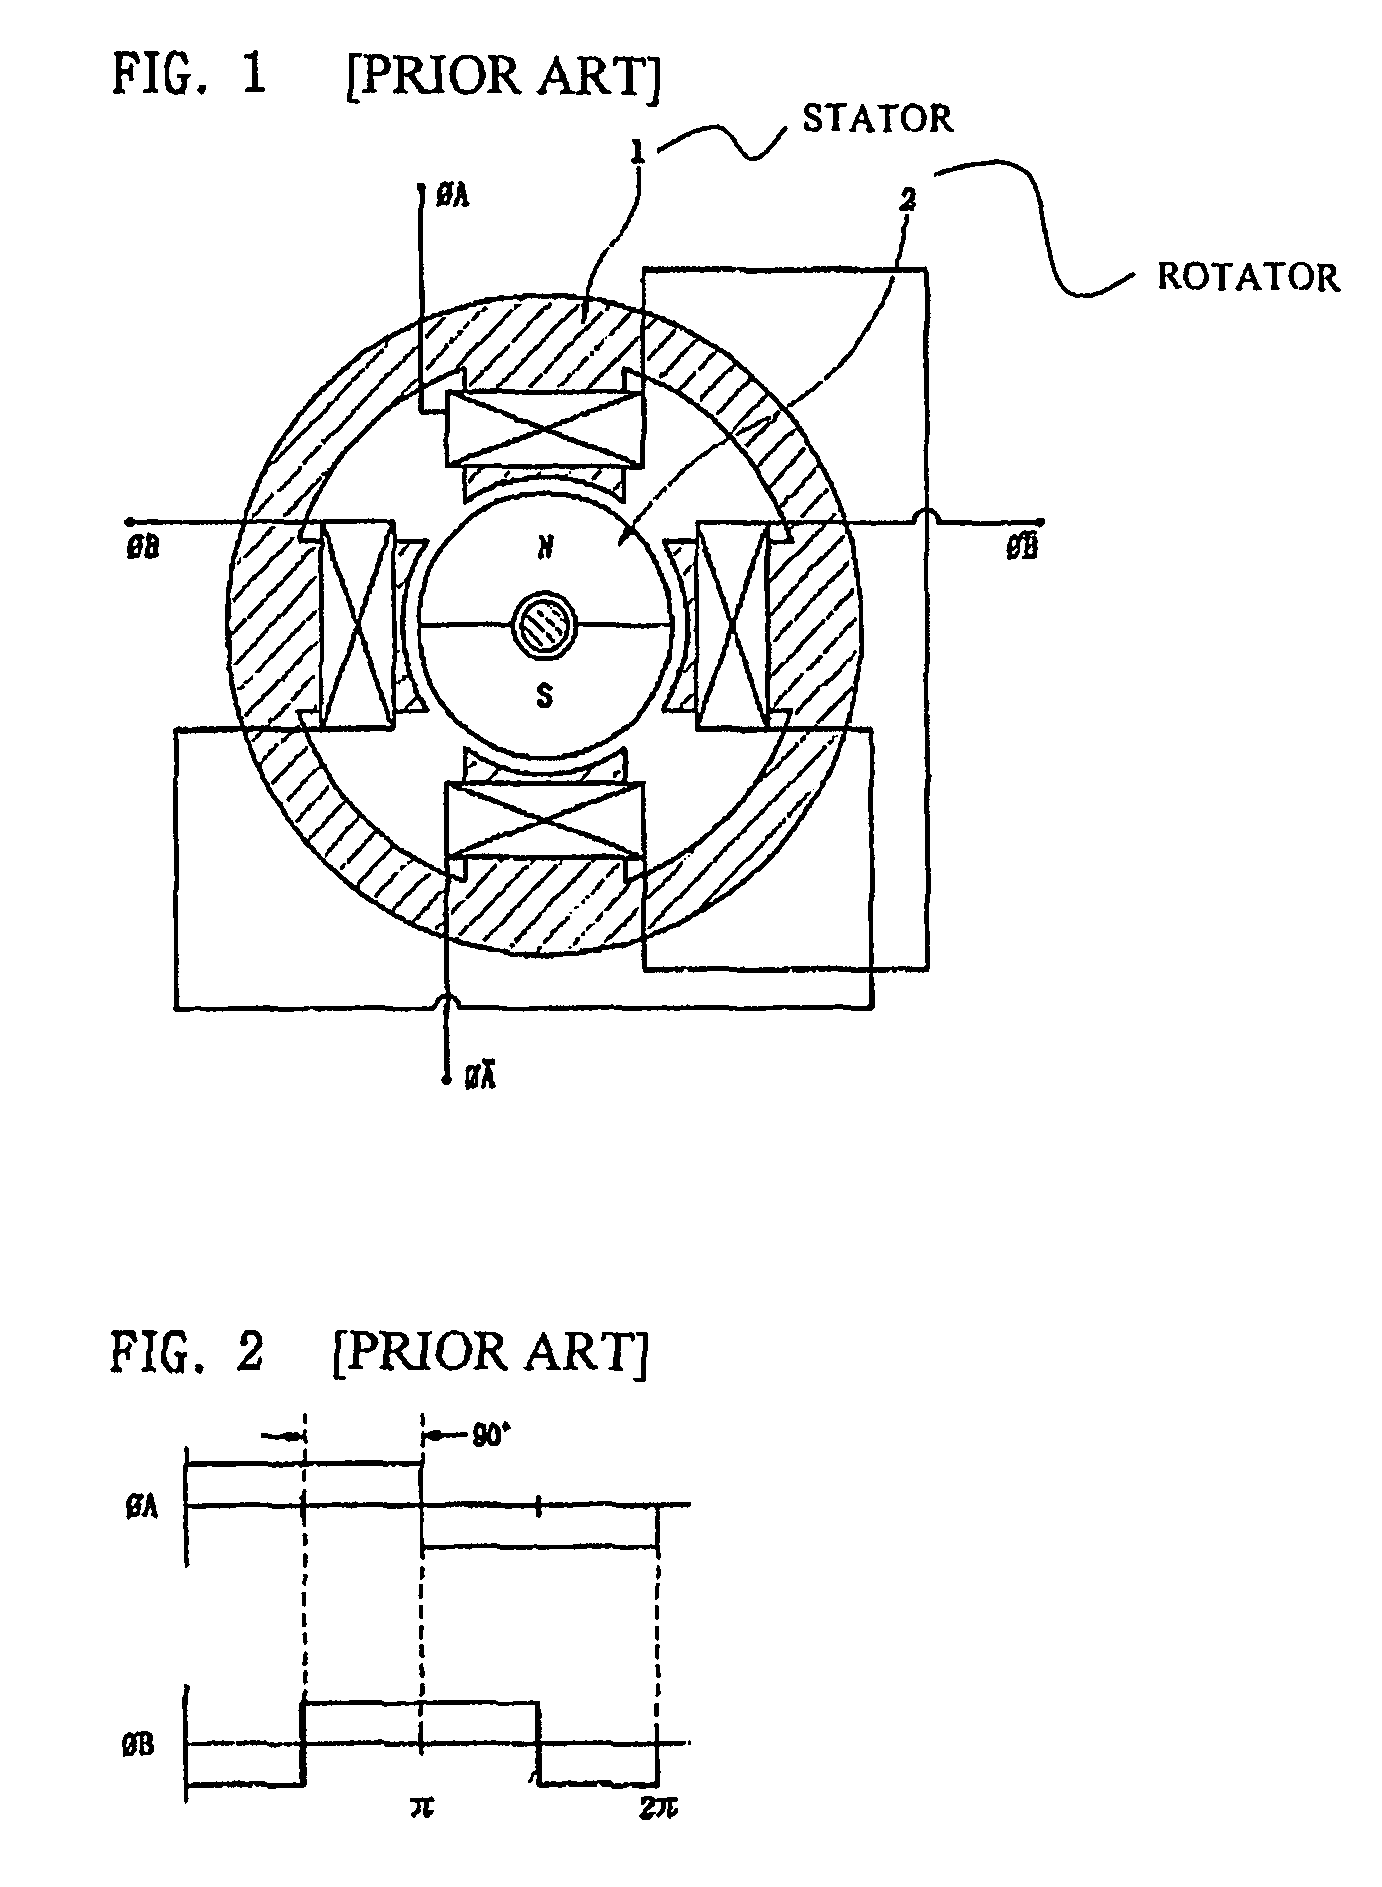 Two-phase brushless DC motor